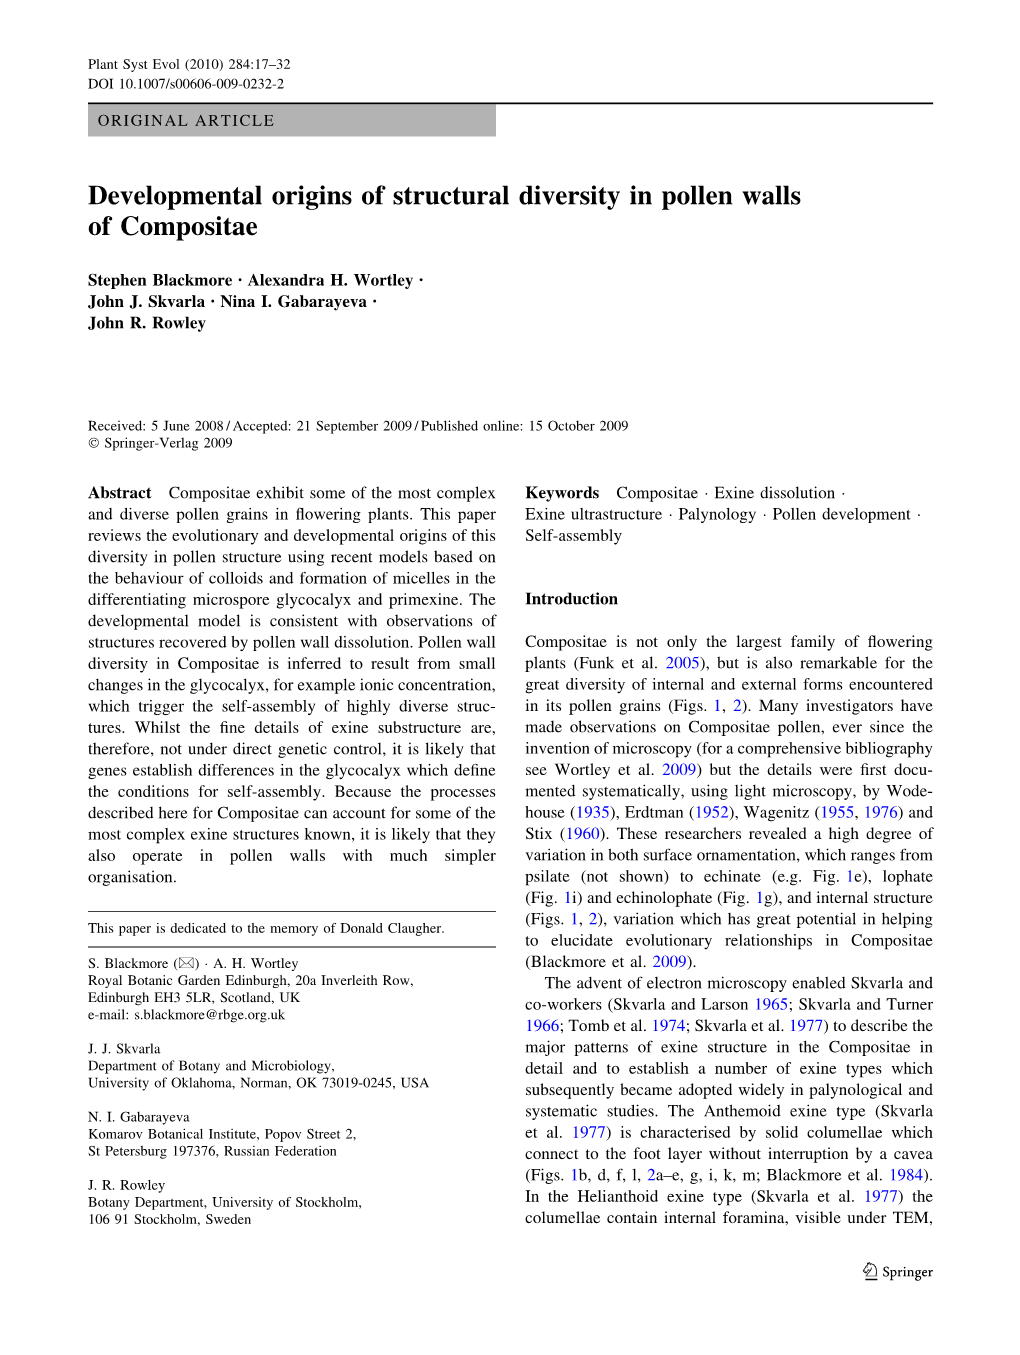 Developmental Origins of Structural Diversity in Pollen Walls of Compositae